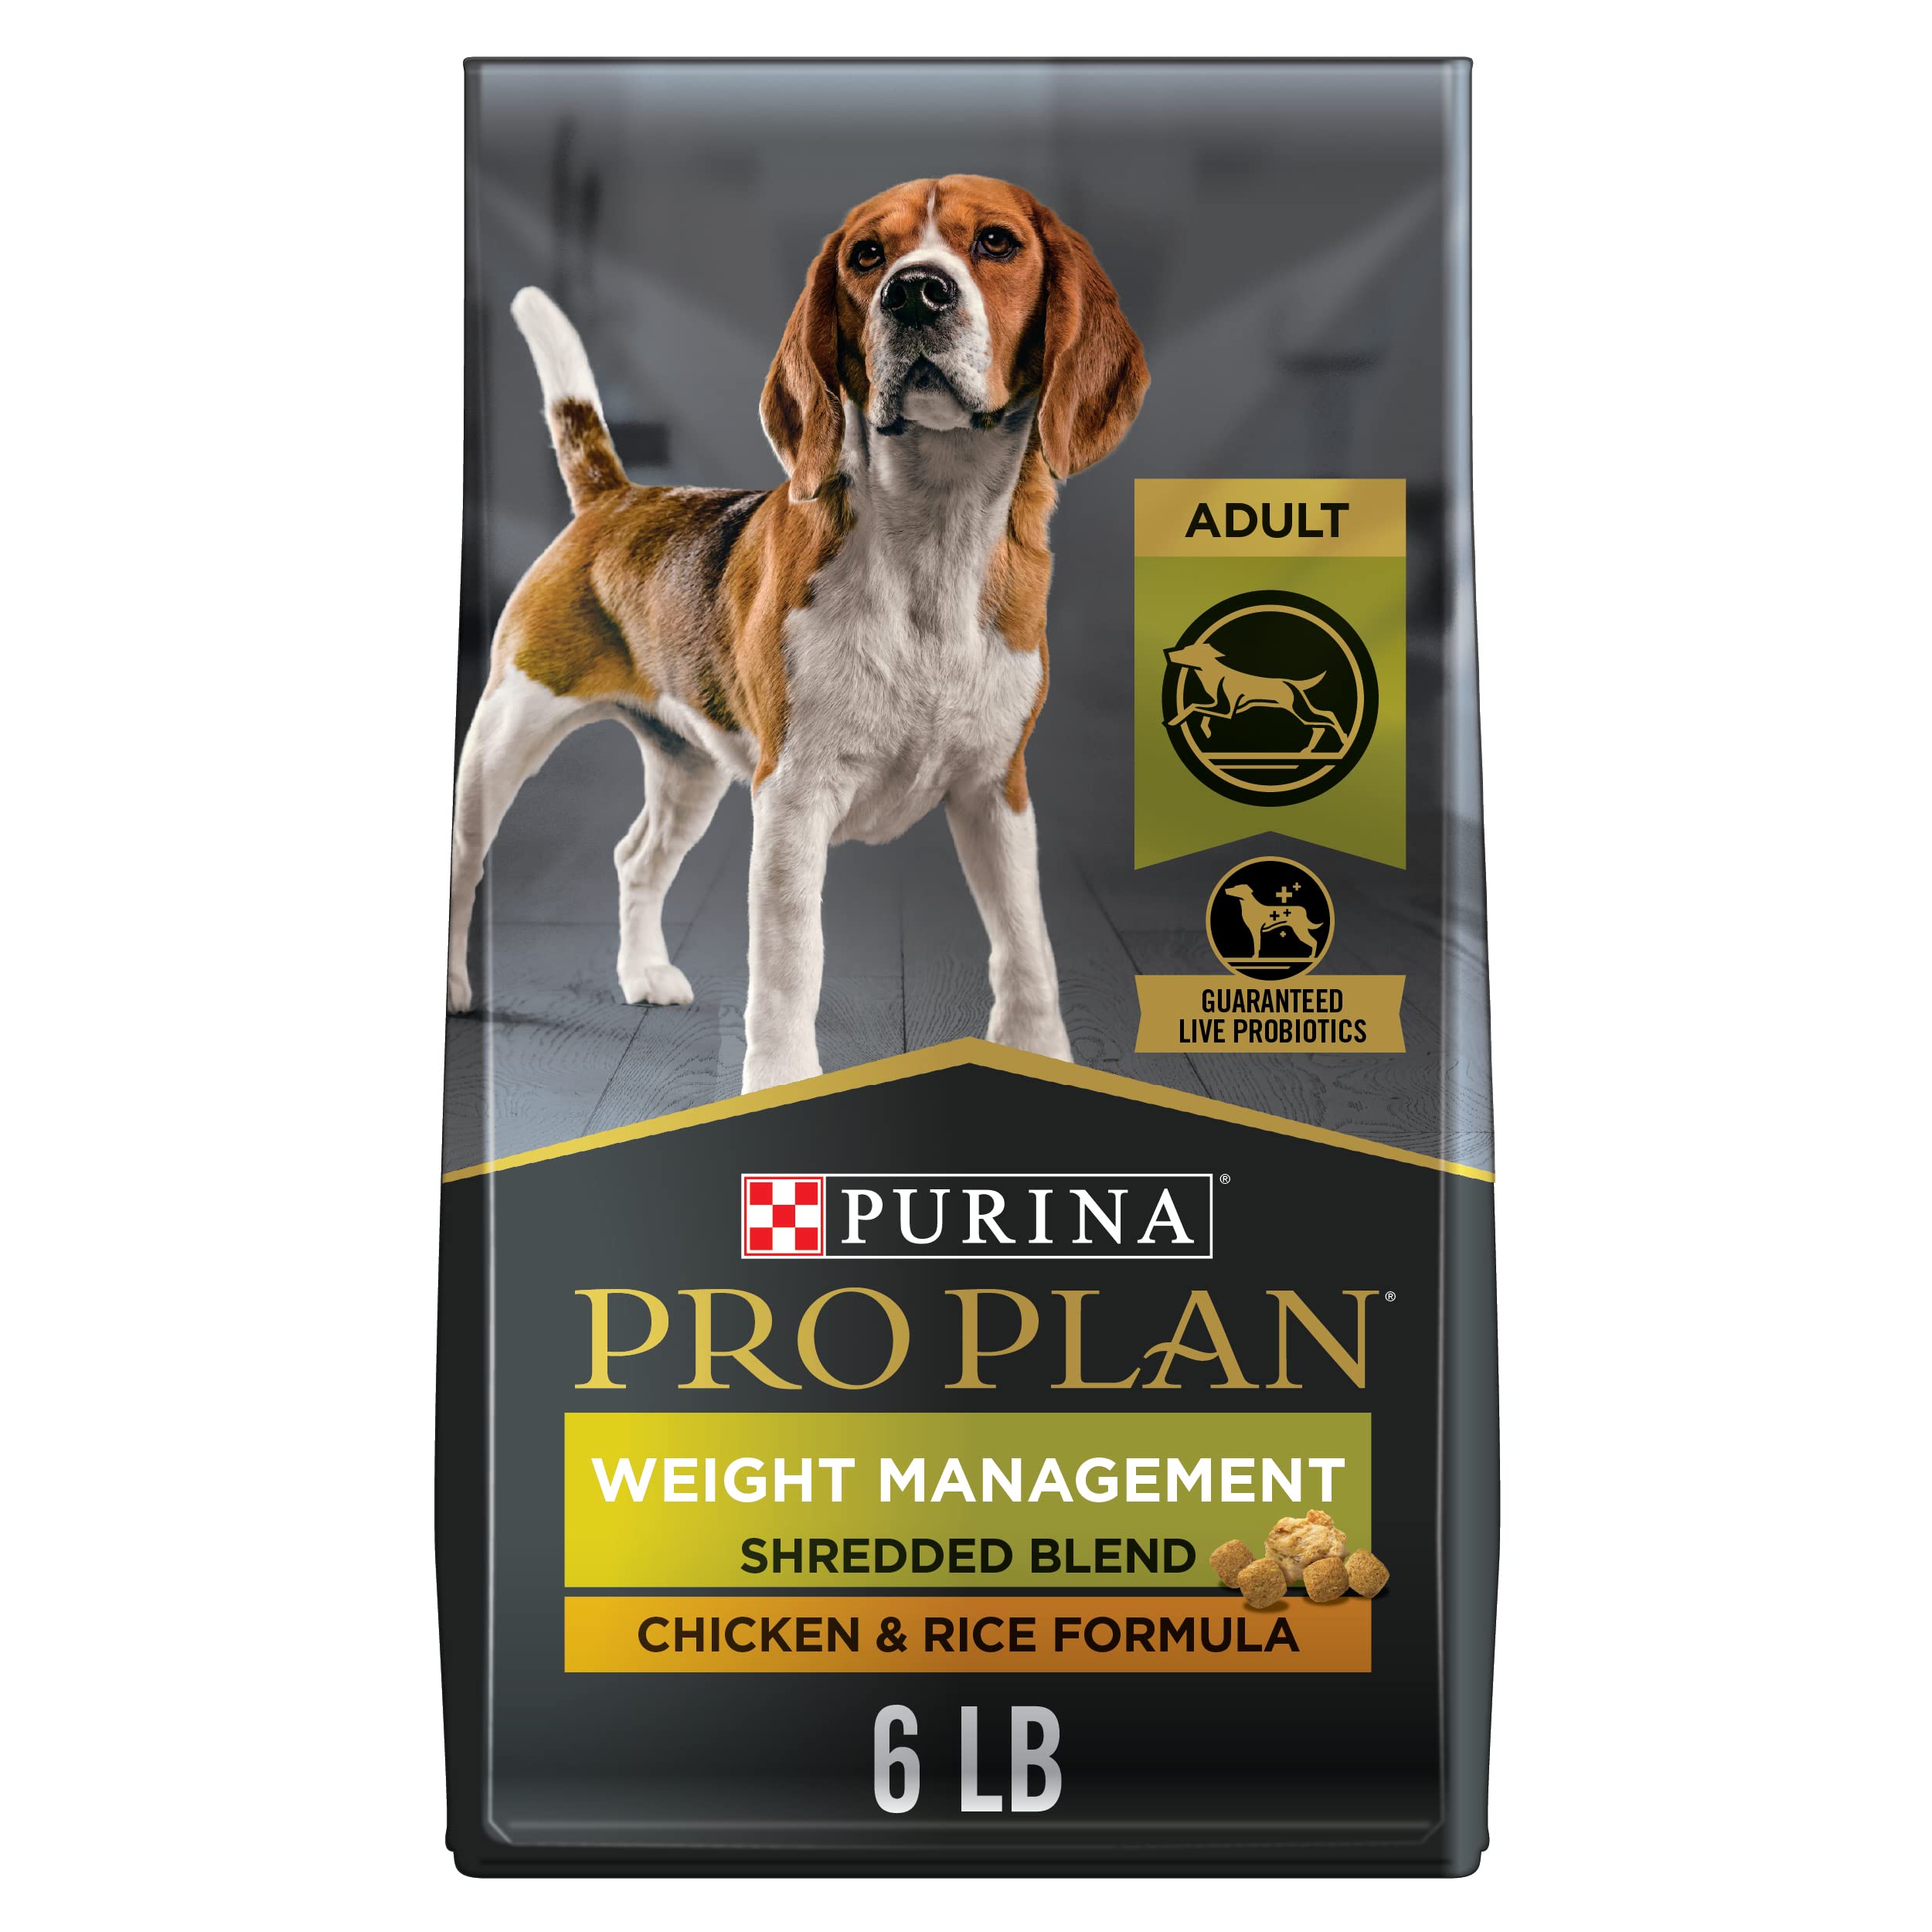 Purina Control de peso Alimento seco para perros adultos Pollo desmenuzado (el embalaje puede variar)